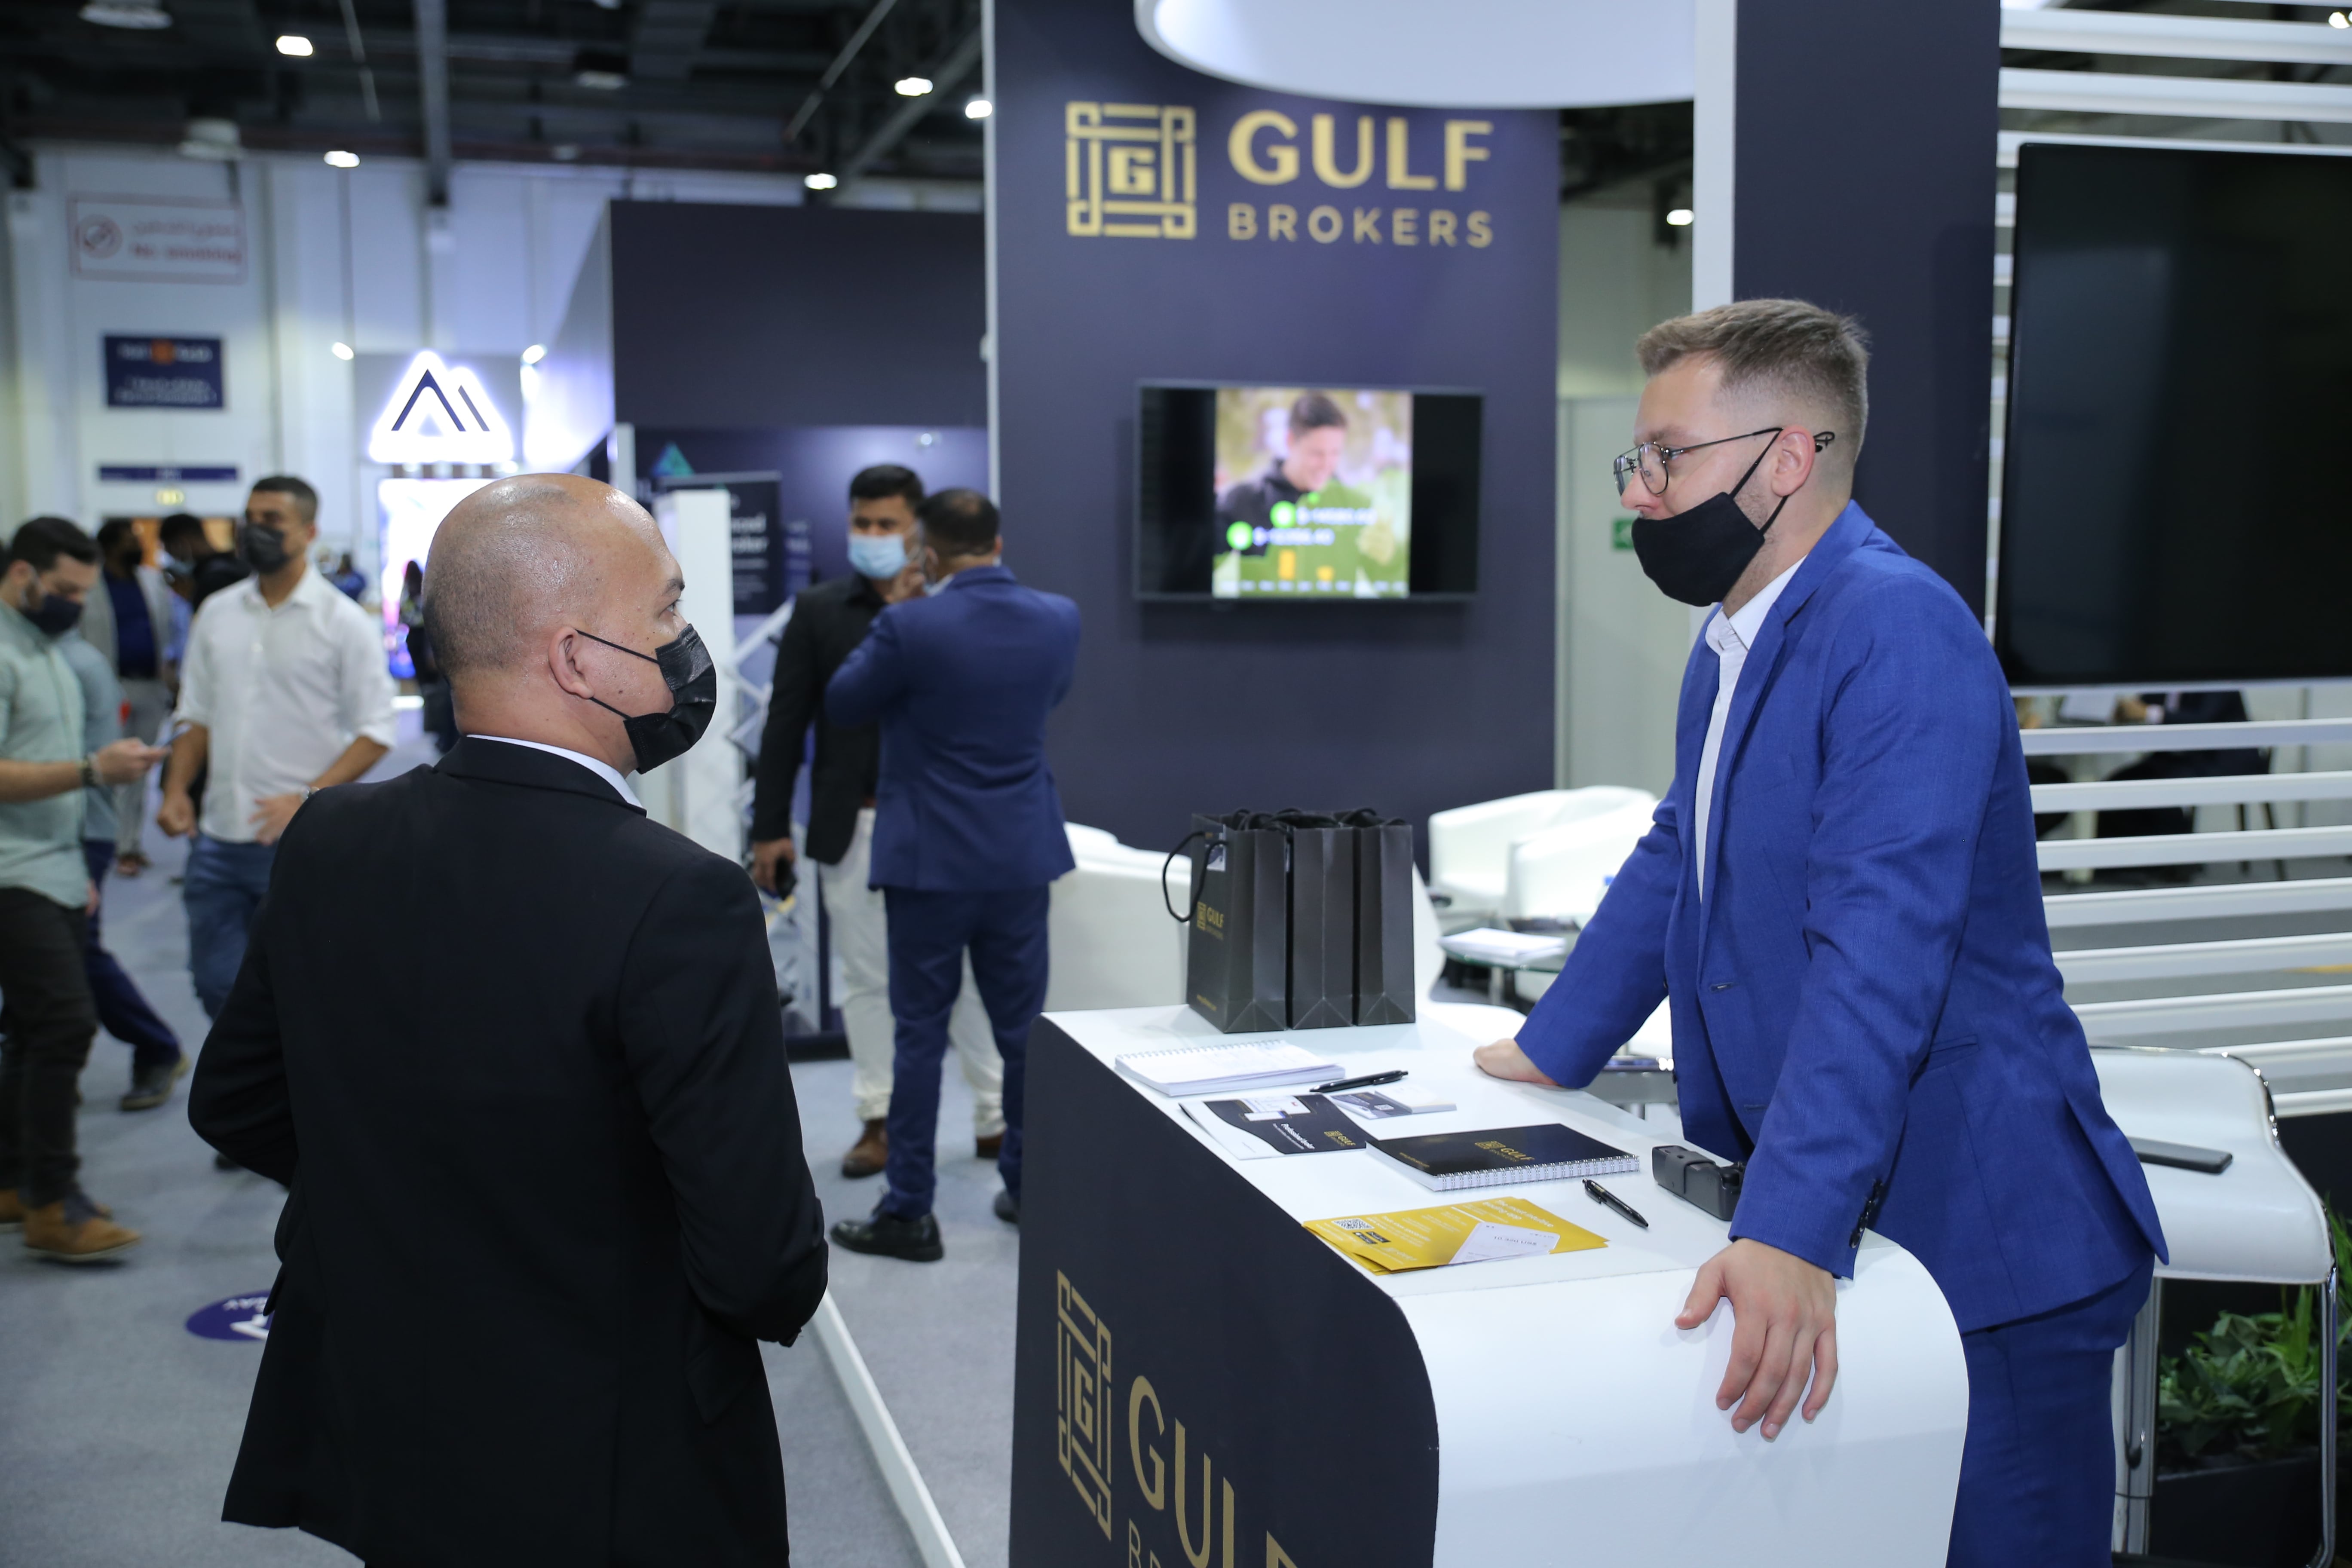 Gulfbrokers | Gulf Brokers